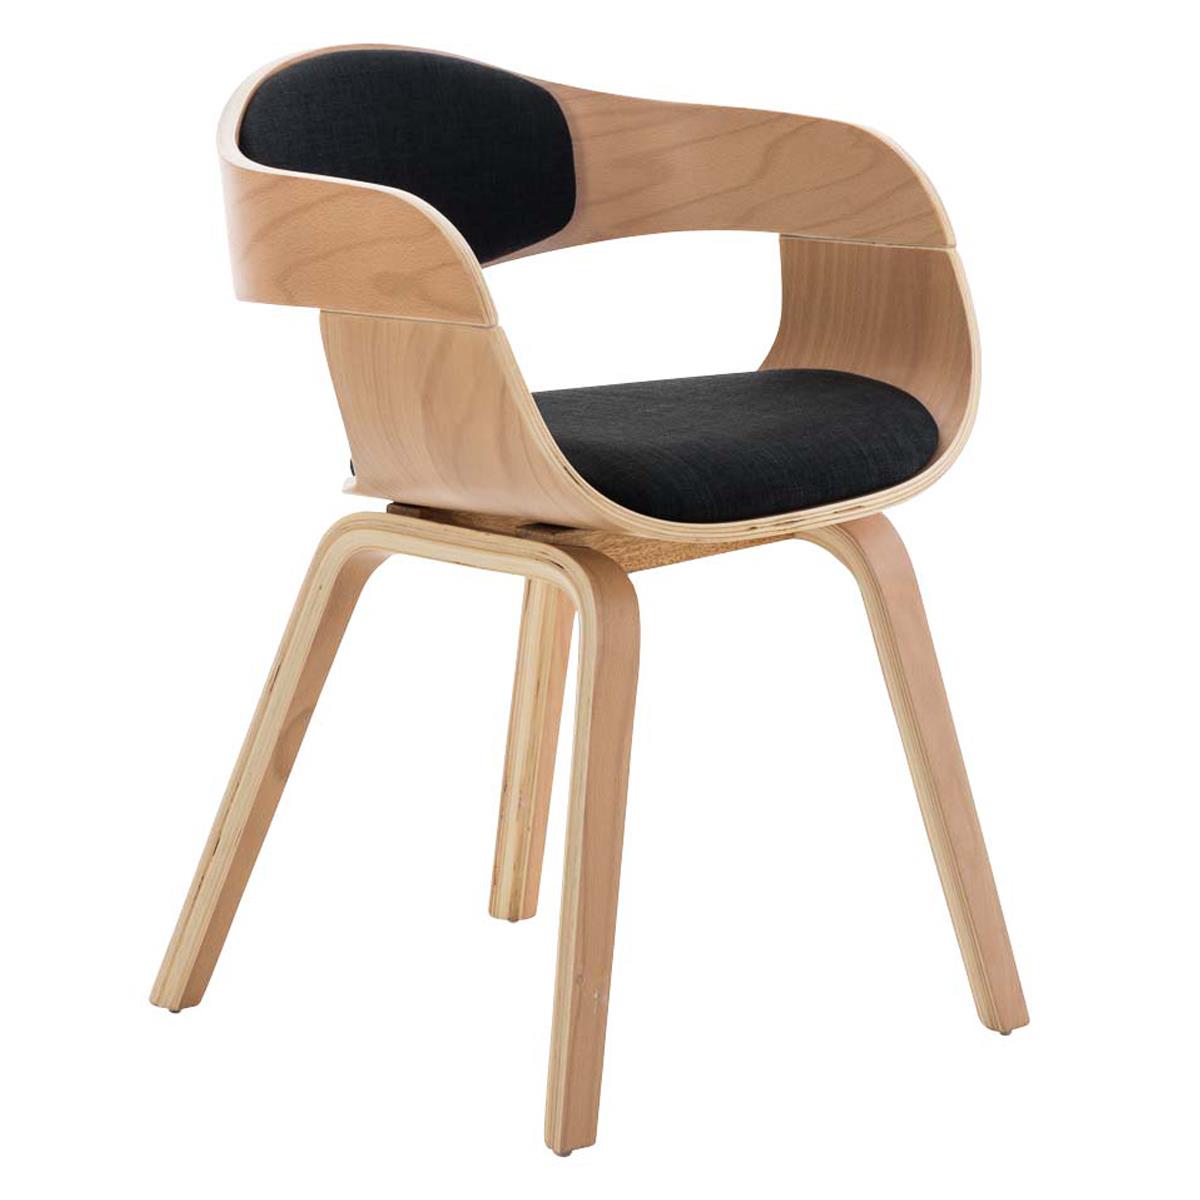 Cadeira de Visita BUTAN PANO, Exclusivo Design, Em Madeira, Cor Faia, Em preto